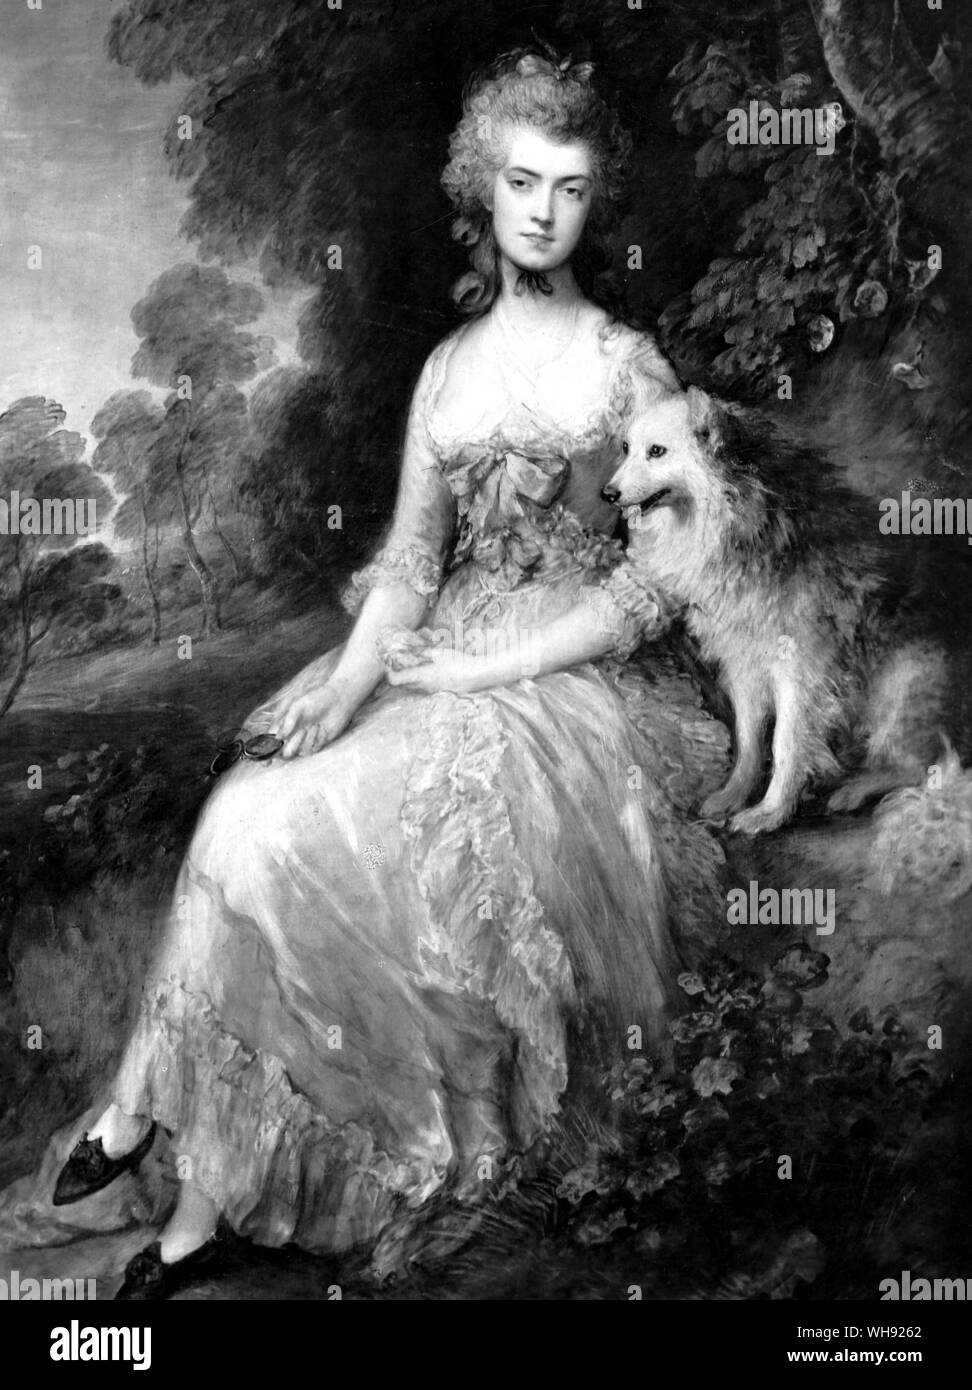 Mme Robinson, actrice anglaise, romancier et poète (1758-1800), Perdita, 1781. De Thomas Gainsborough (1727-88). La société anglaise peintre de portraits et de paysages. Banque D'Images